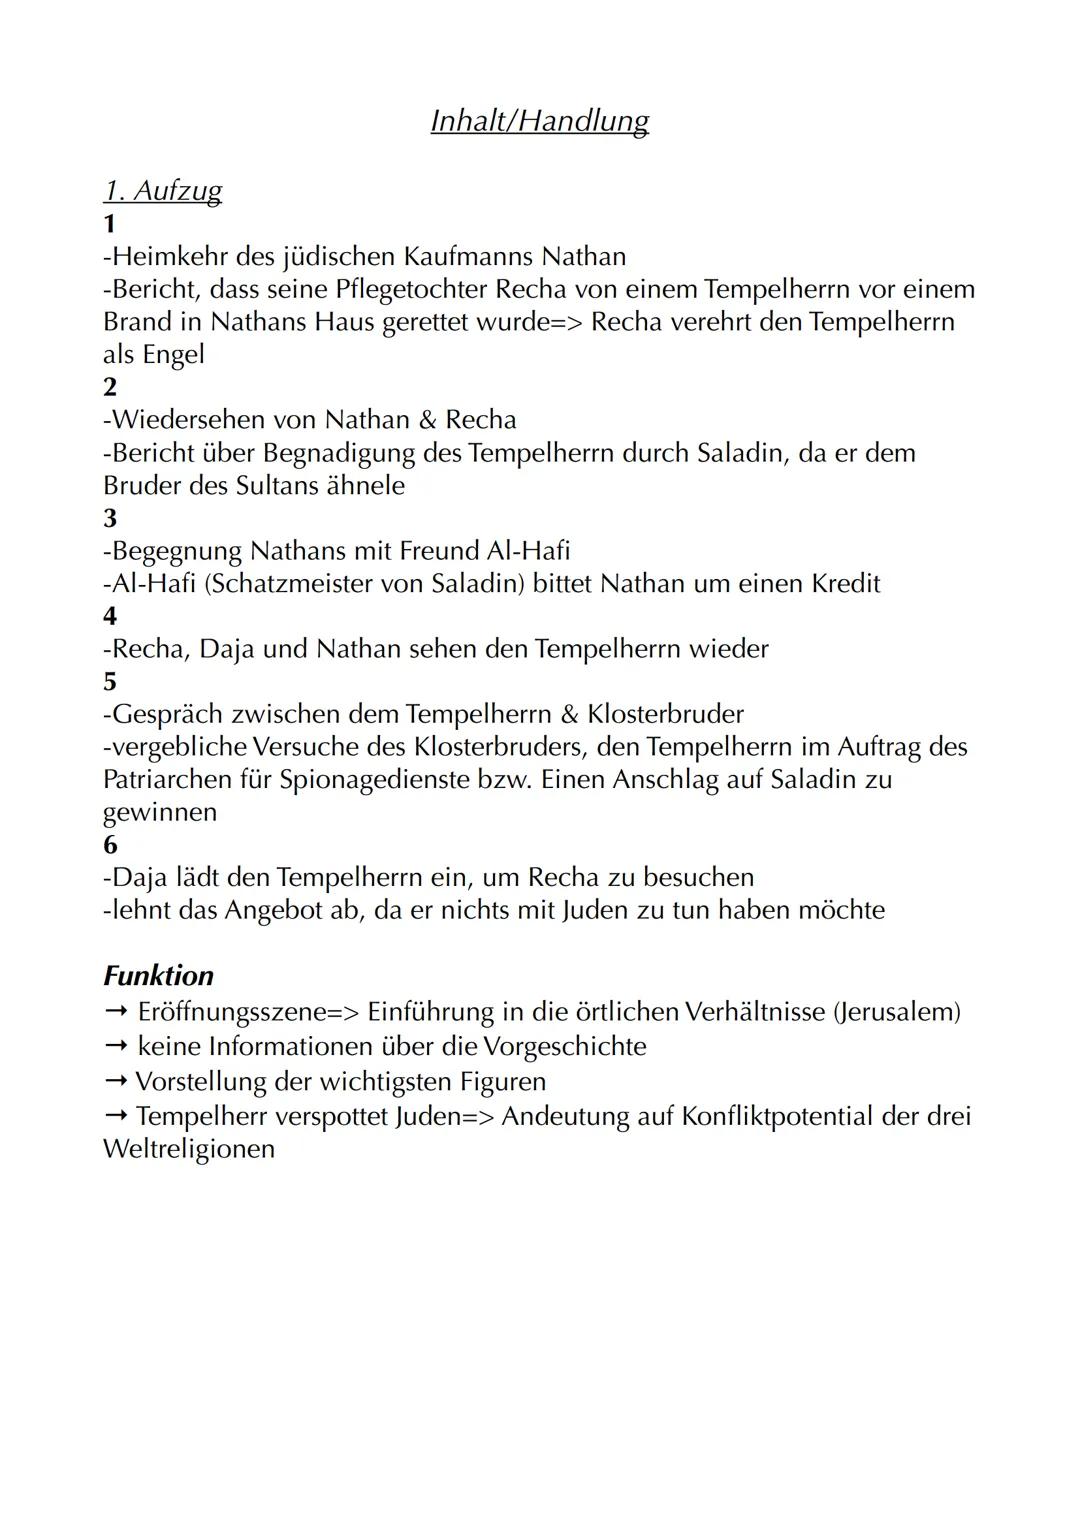 Nathan der Weise
Autor: Gotthold Ephraim Lessing
Jahr: 1779
Textsorte: Dramatisches Gedicht
Aufbau: 5 Aufzüge/Akte mit jeweiligen Auftritten